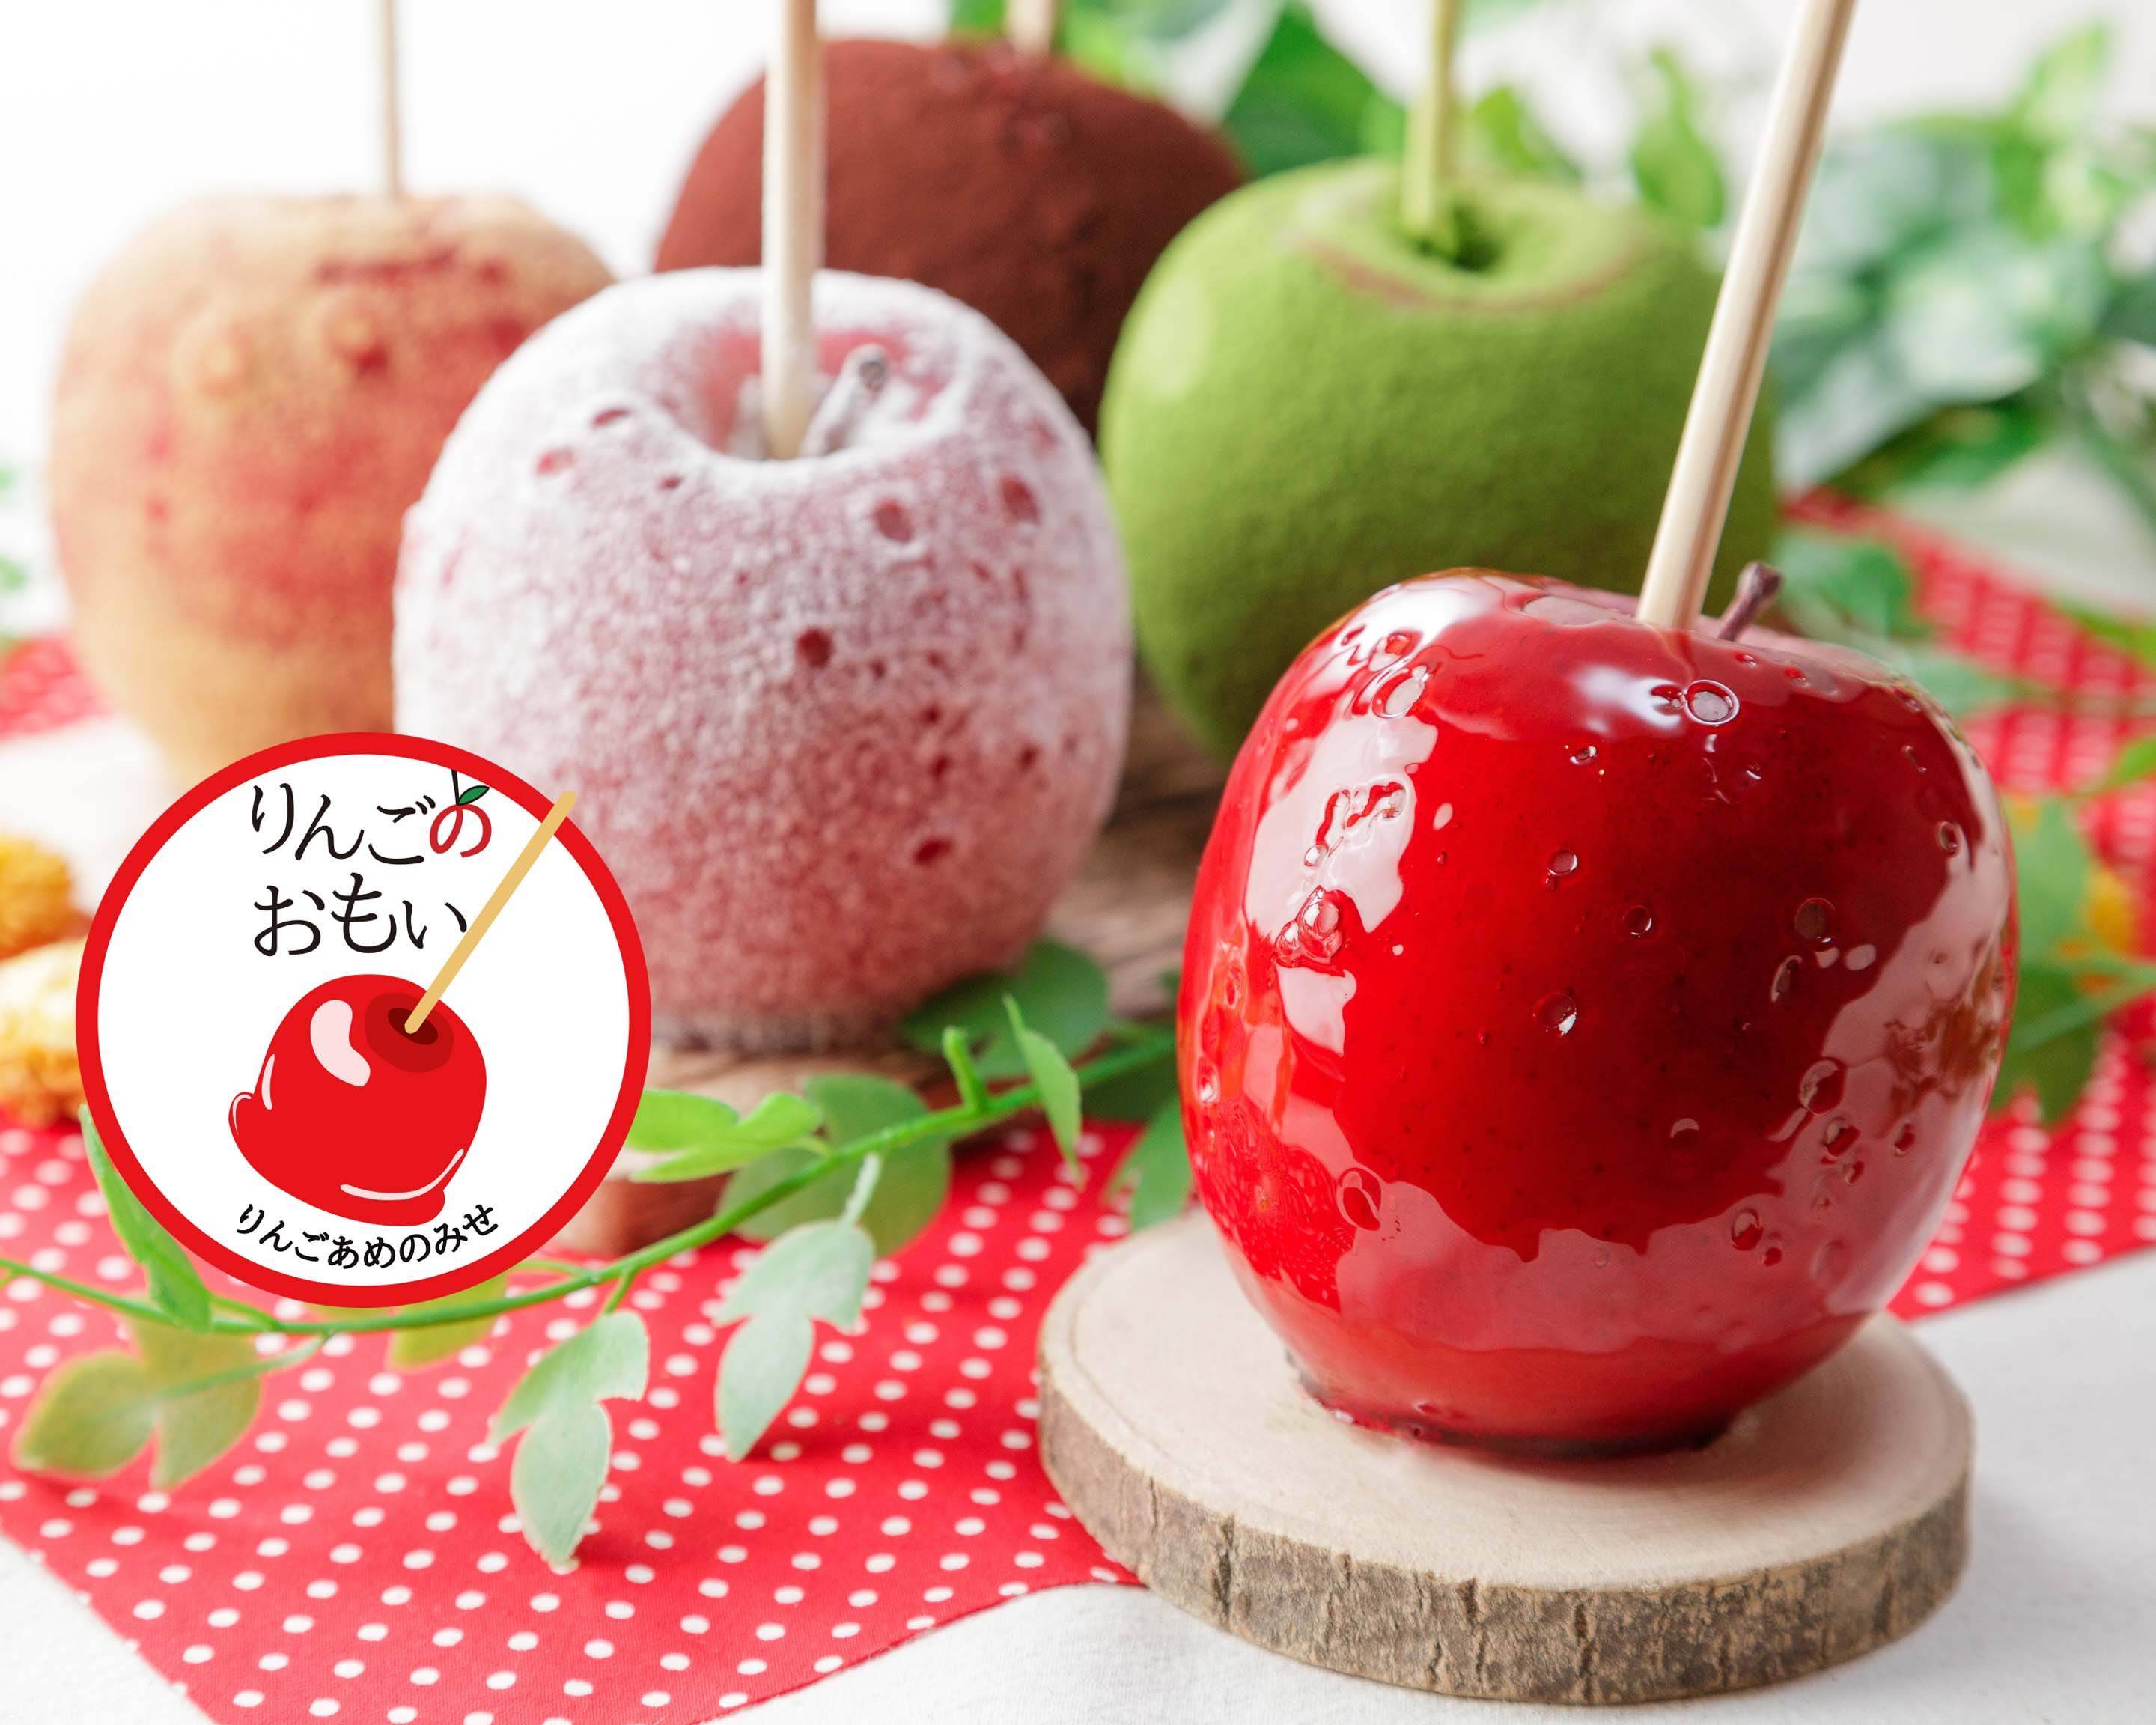 りんごあめのみせ りんごのおもい 京橋店 Apple Candy Ringo no Omoi 